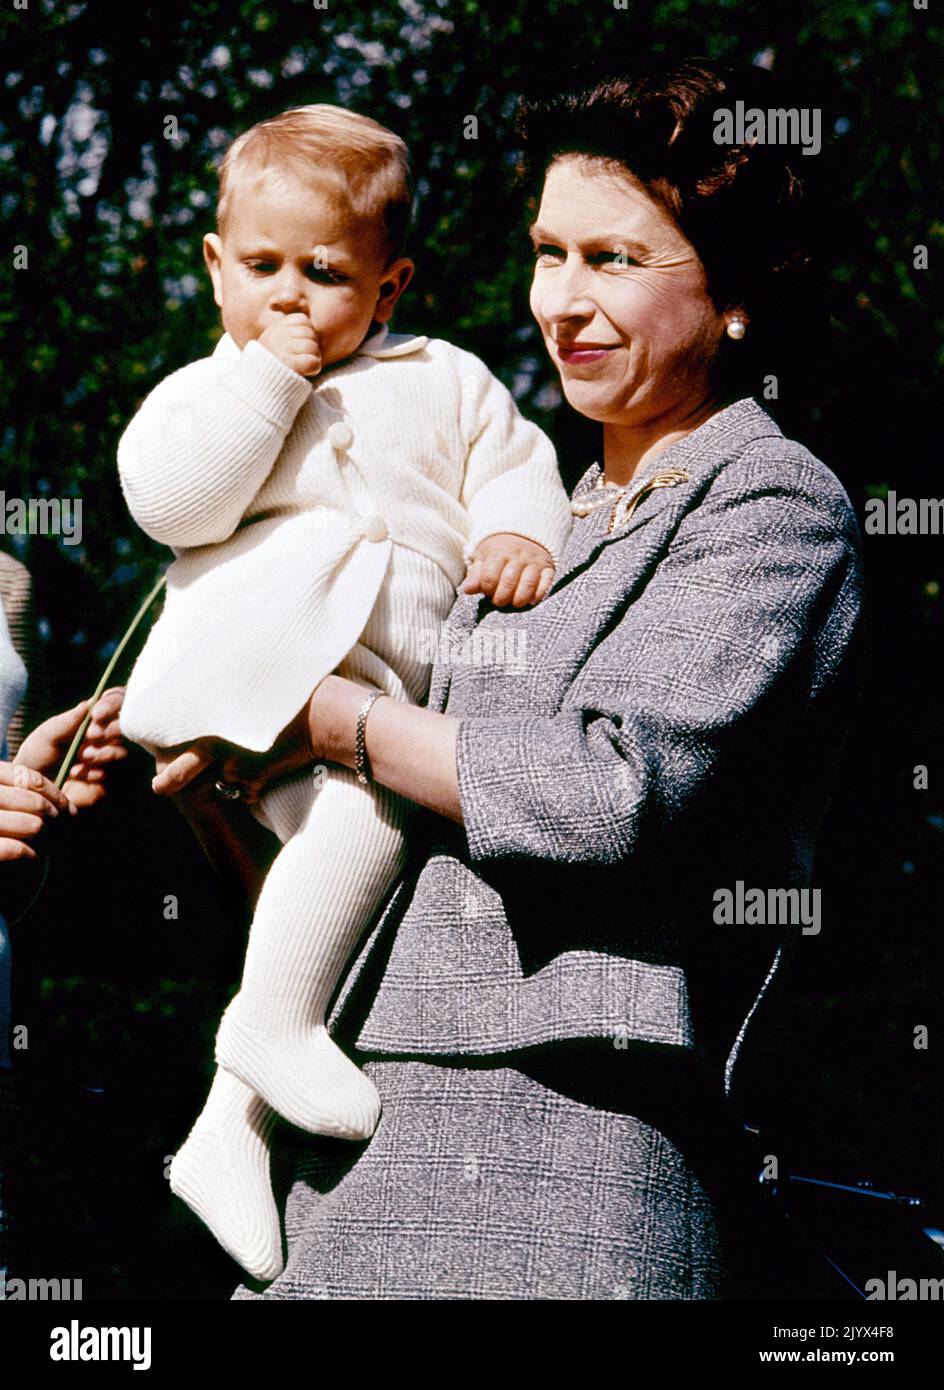 Aktenfoto vom 21/04/1965 von Königin Elizabeth II., die ihren Sohn Prinz Edward hält. Wie Buckingham Palace mitteilte, starb die Königin heute Nachmittag friedlich in Balmoral. Ausgabedatum: Donnerstag, 8. September 2022. Stockfoto